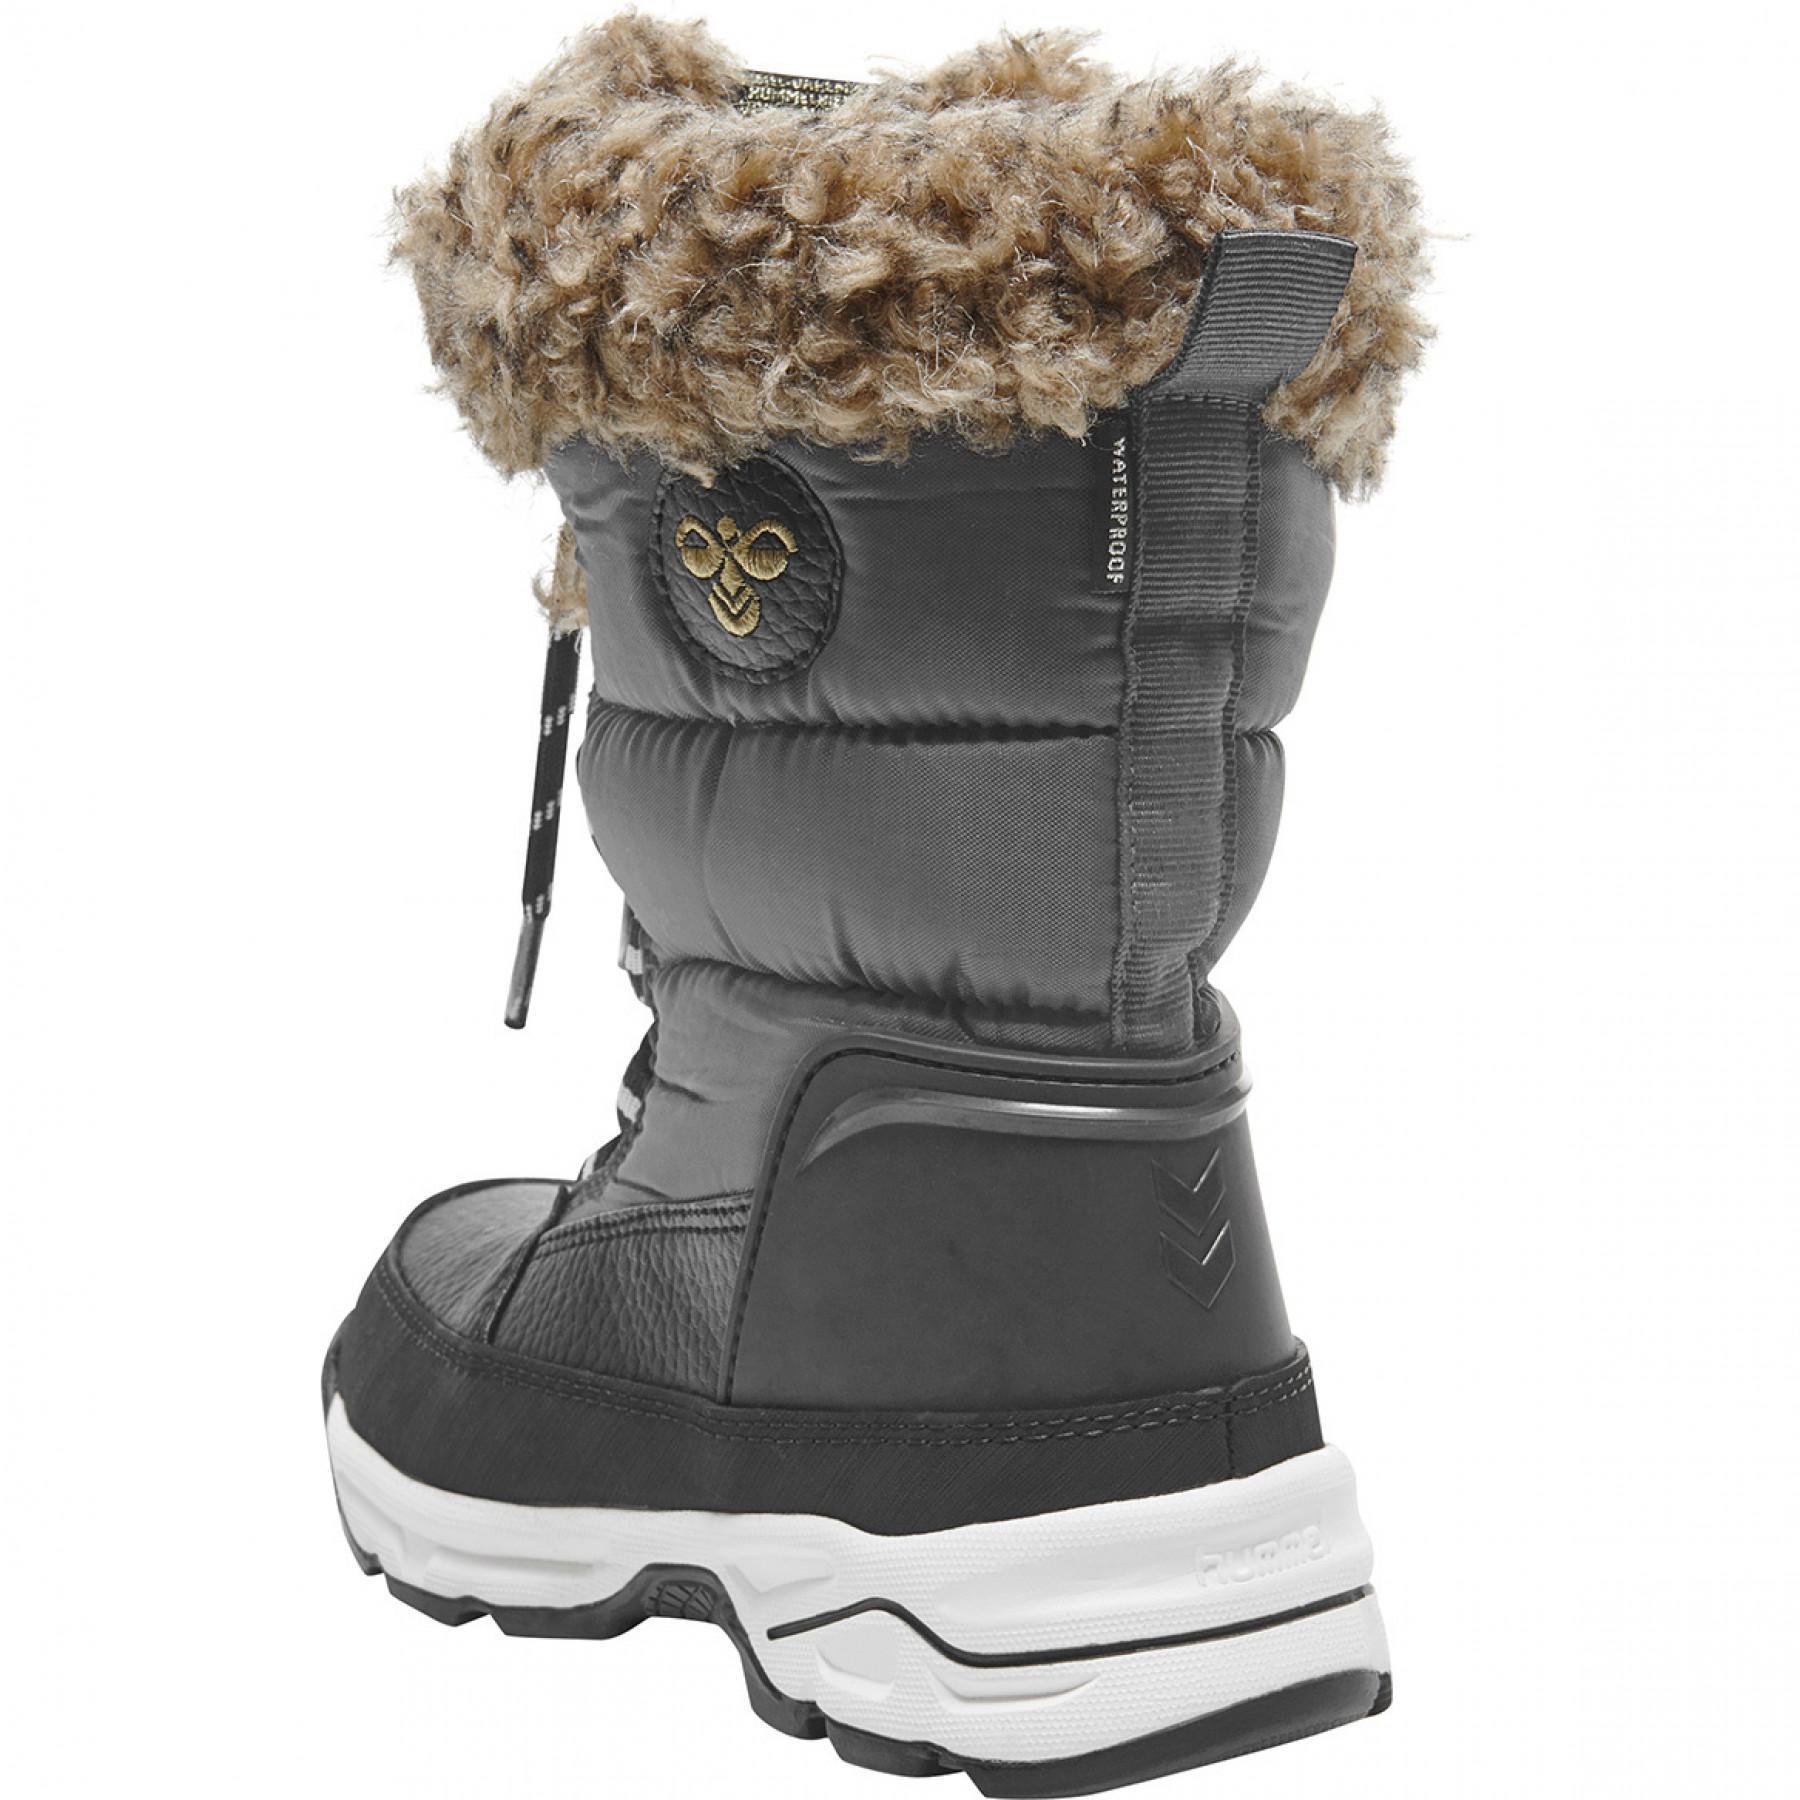 Children's sneakers Hummel snow boot